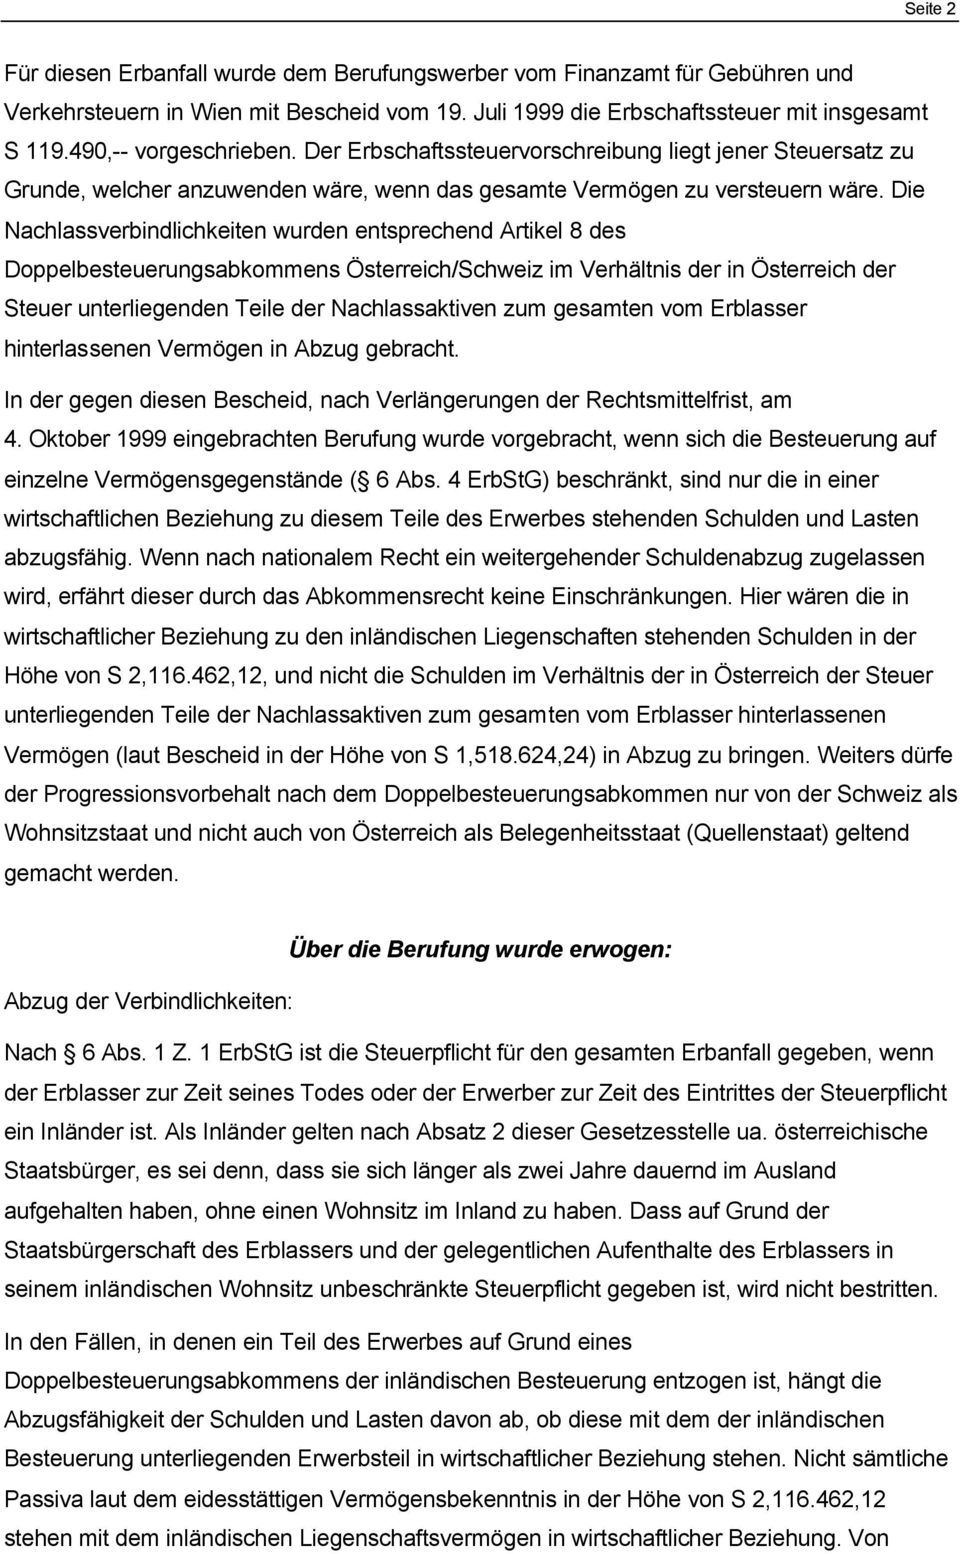 Die Nachlassverbindlichkeiten wurden entsprechend Artikel 8 des Doppelbesteuerungsabkommens Österreich/chweiz im Verhältnis der in Österreich der teuer unterliegenden Teile der Nachlassaktiven zum